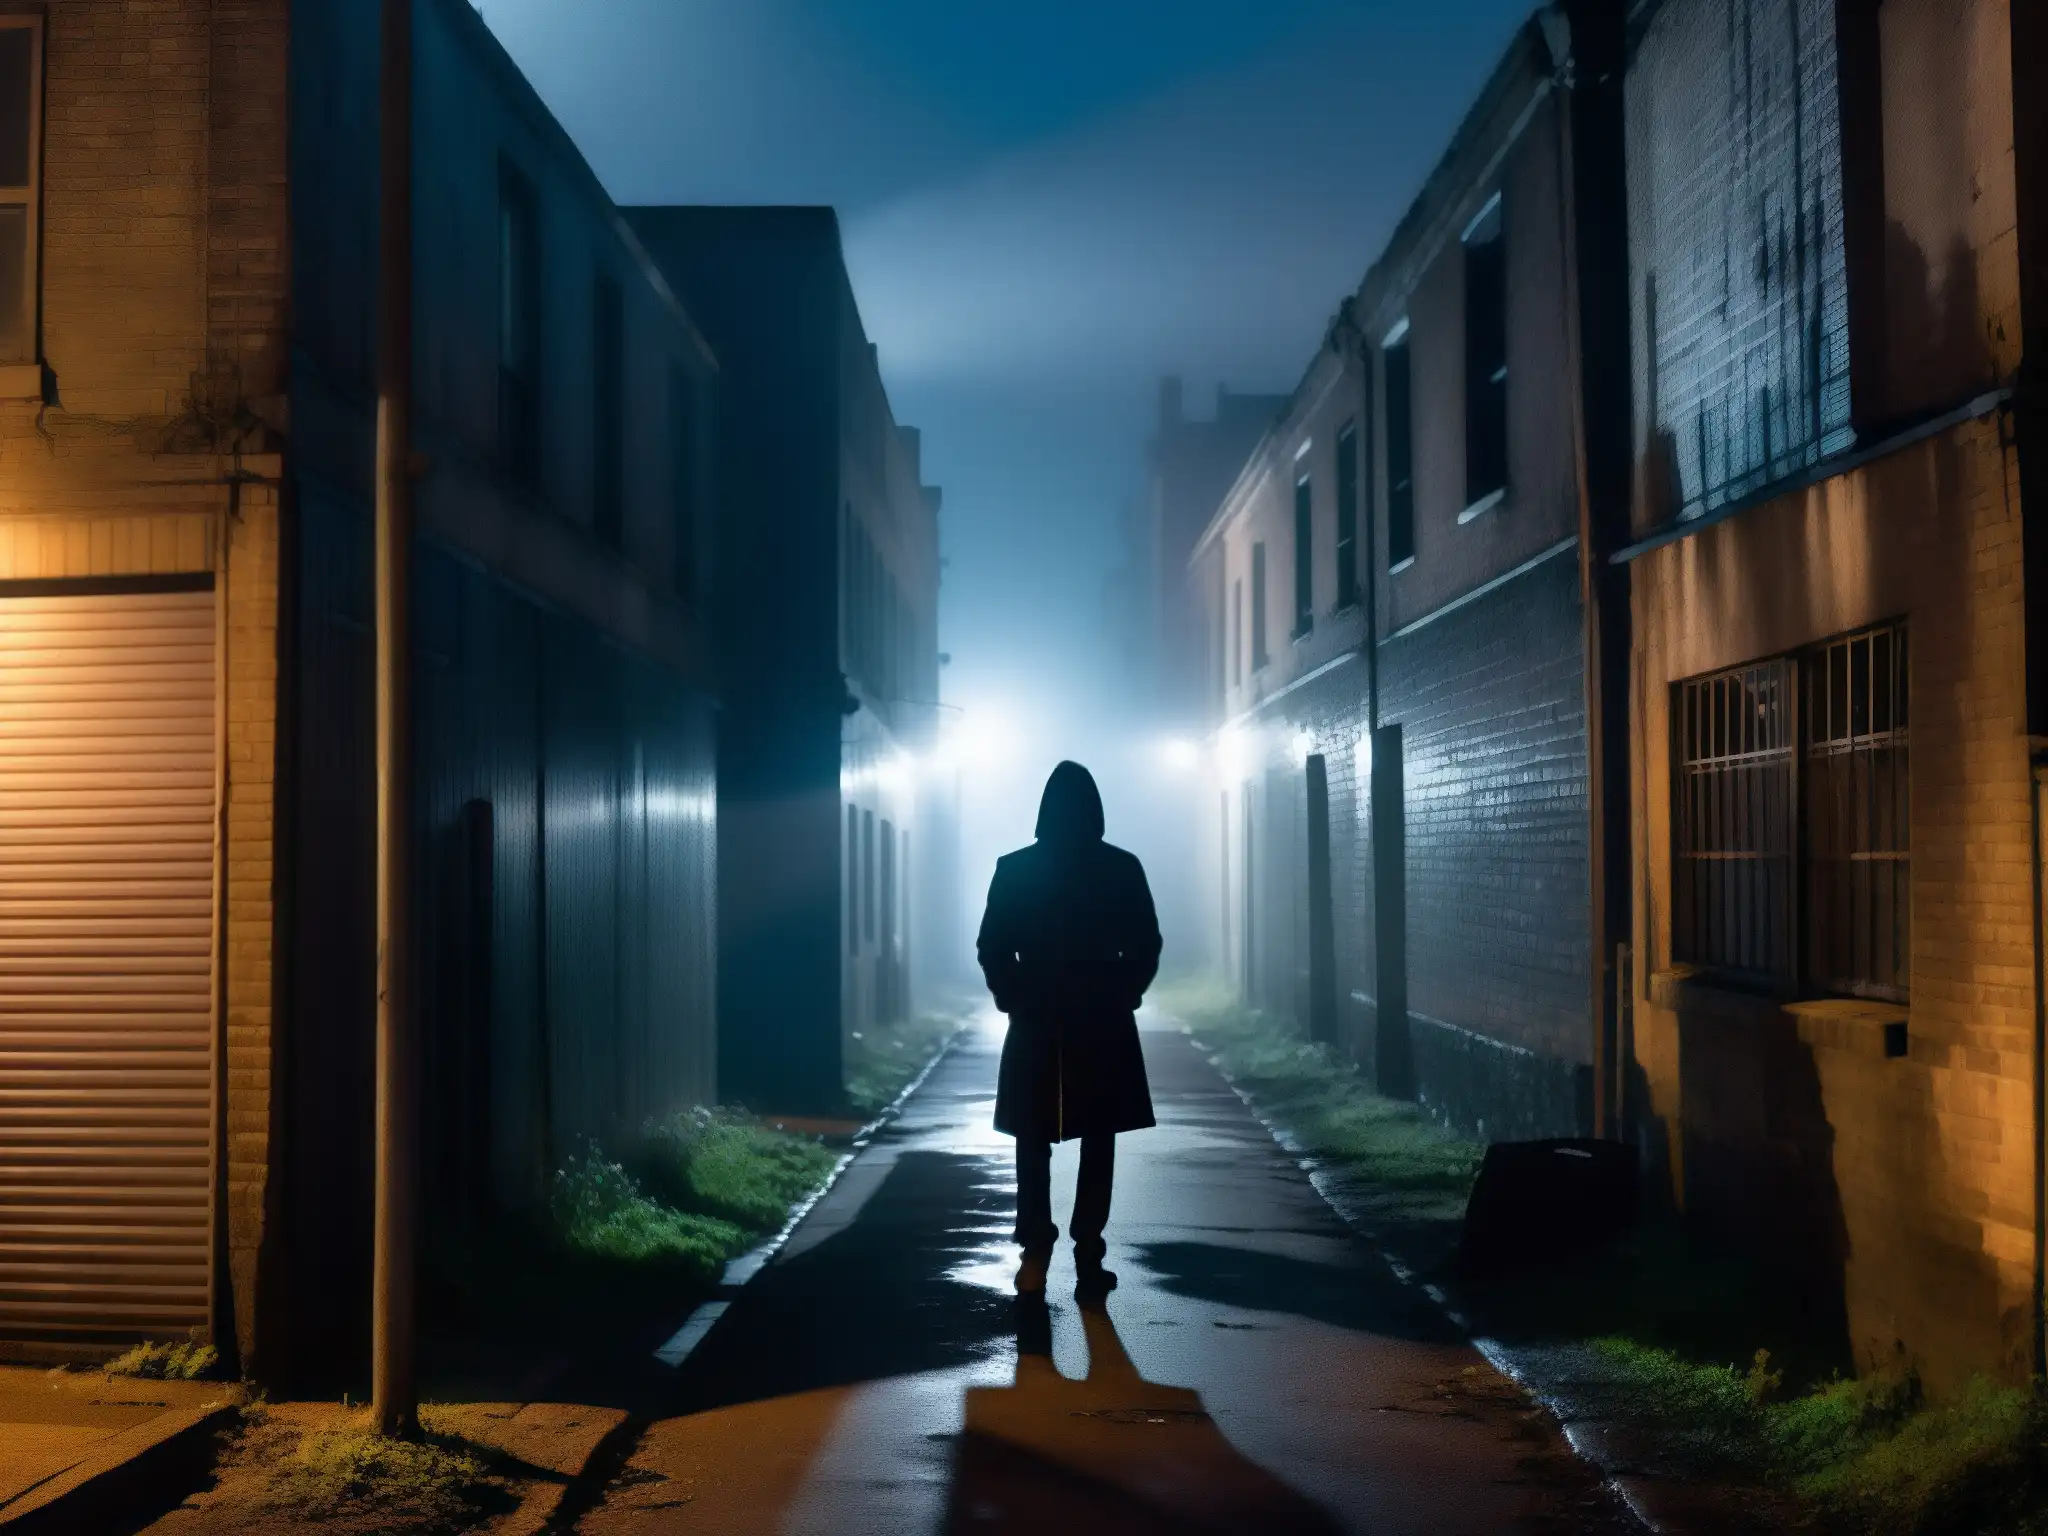 Un callejón neblinoso y tenue de noche, con la silueta de una figura rodeada de leyendas urbanas